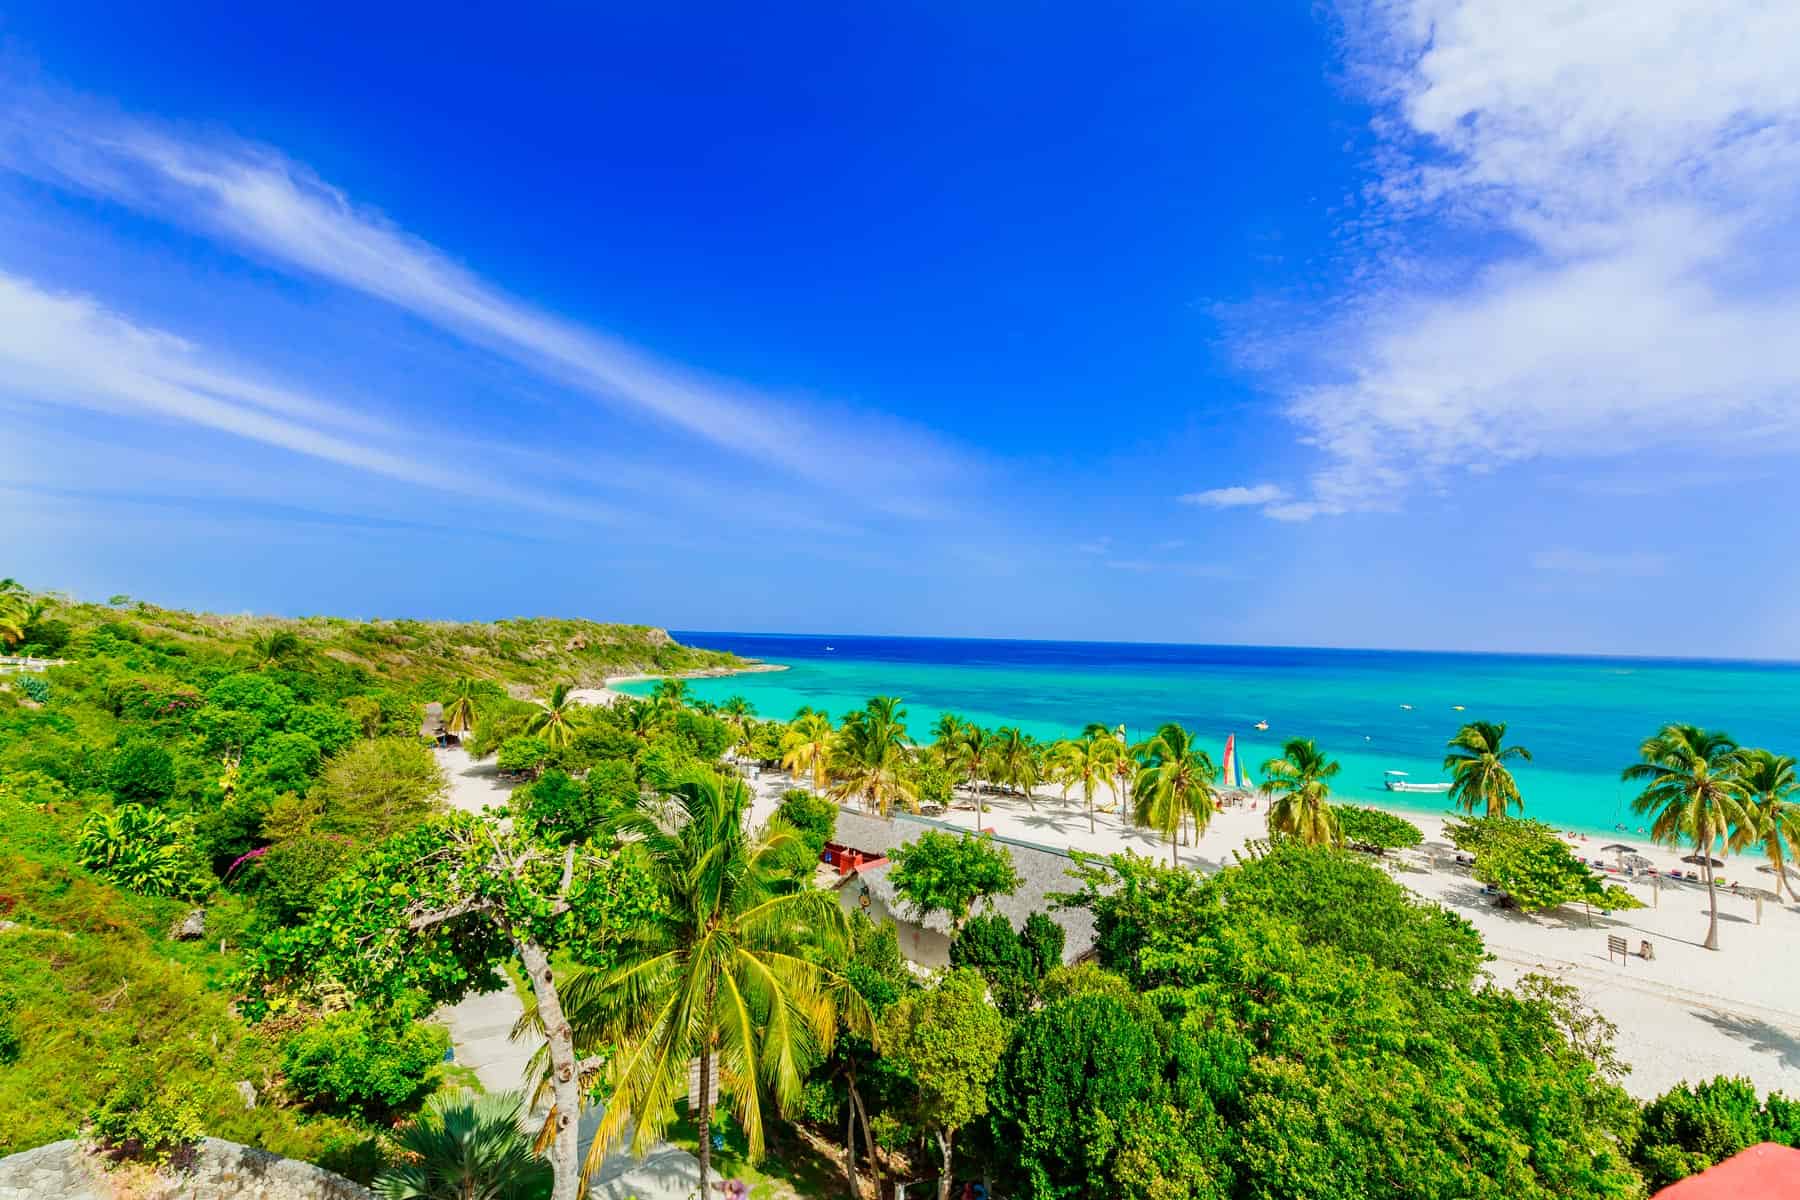 Oferta de Excursion Turística a Playa Guardalavaca con Havanatur Julio 2023